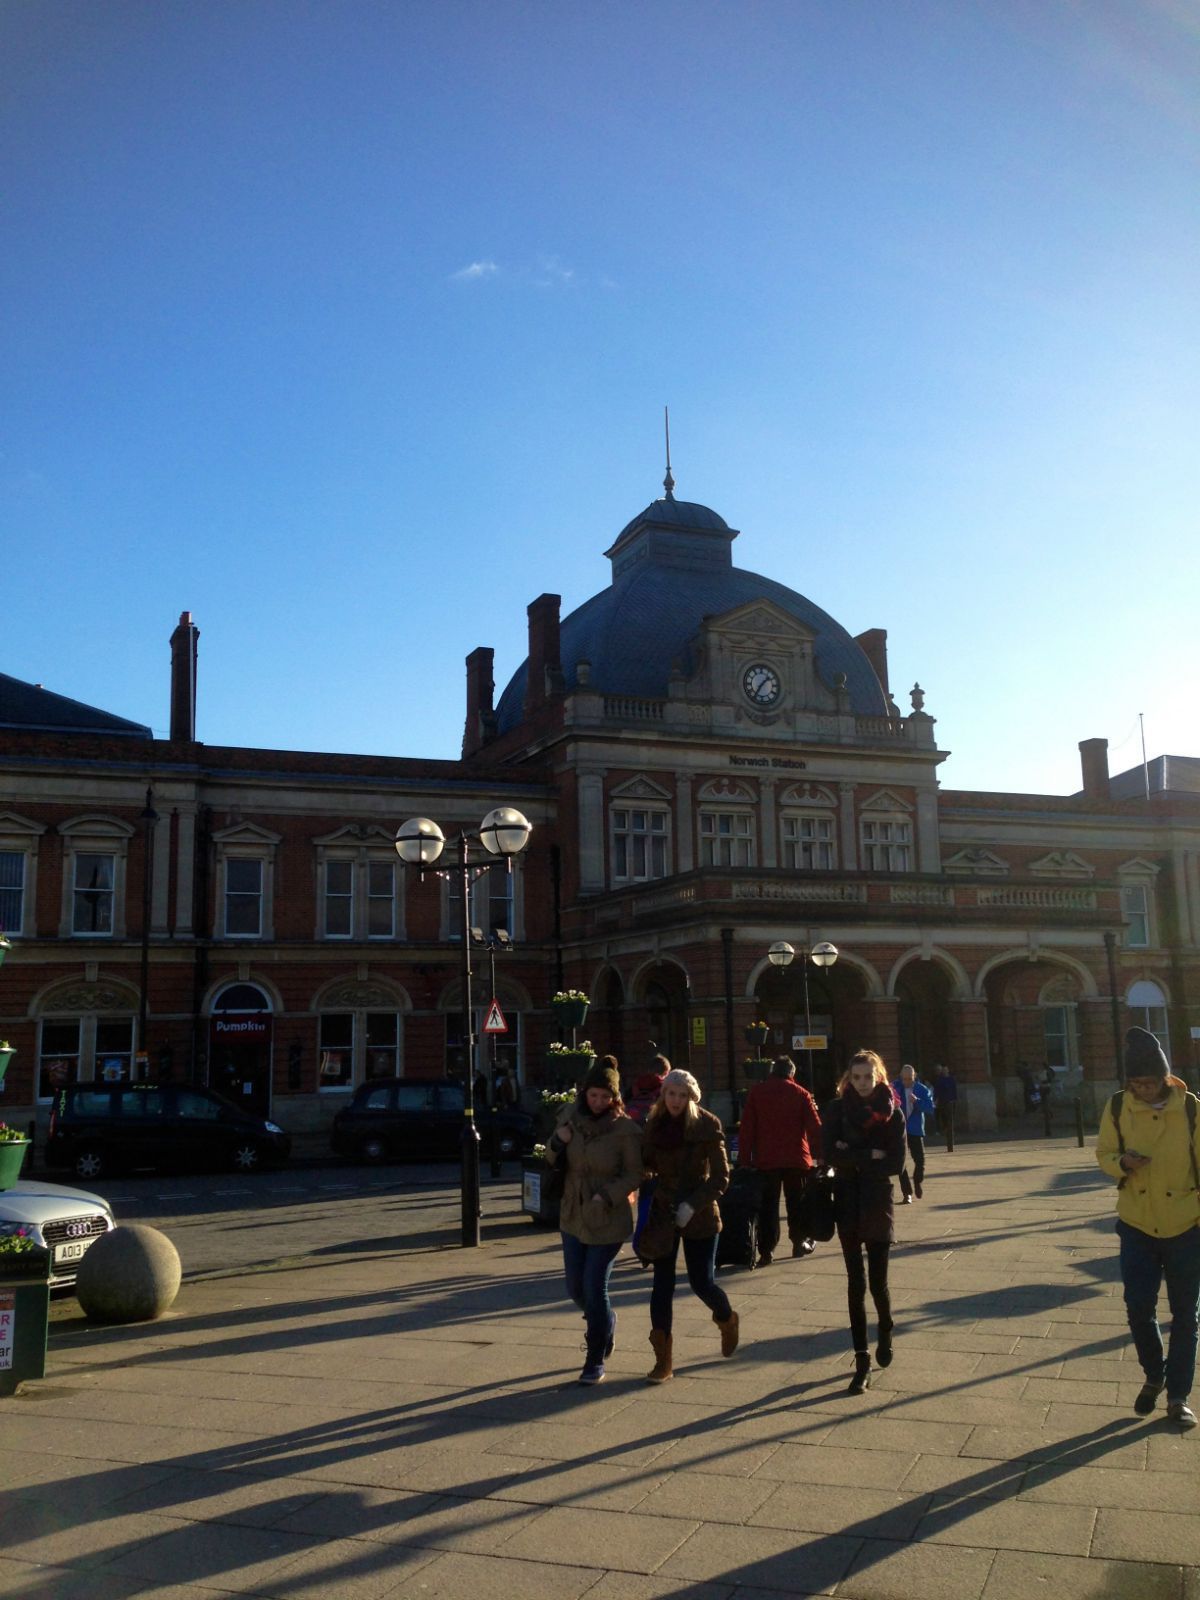 英国老式火车站图片